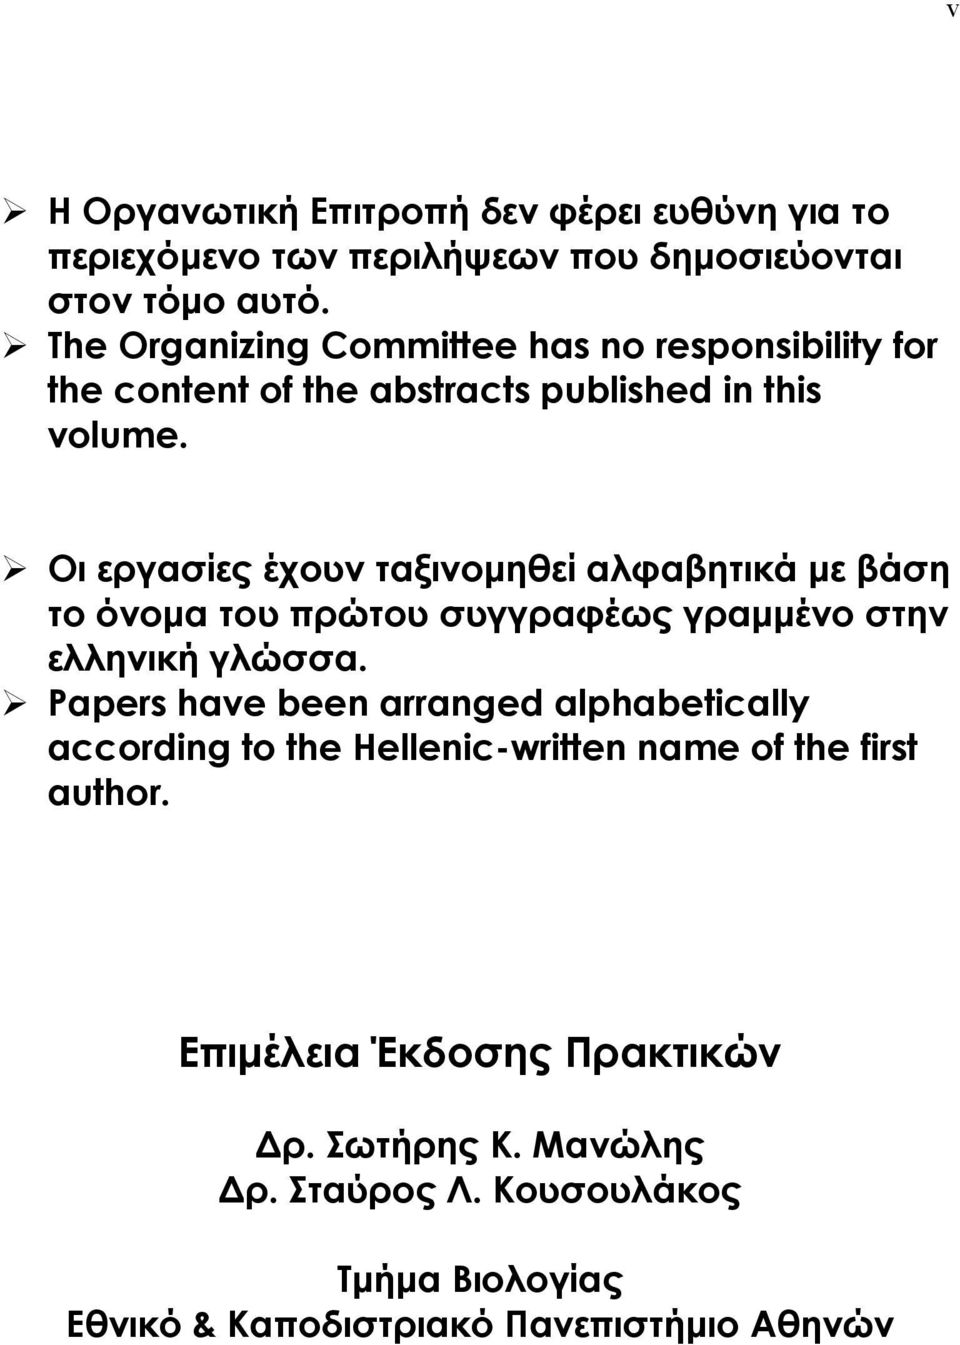 Οι εργασίες έχουν ταξινοµηθεί αλφαβητικά µε βάση το όνοµα του πρώτου συγγραφέως γραµµένο στην ελληνική γλώσσα.